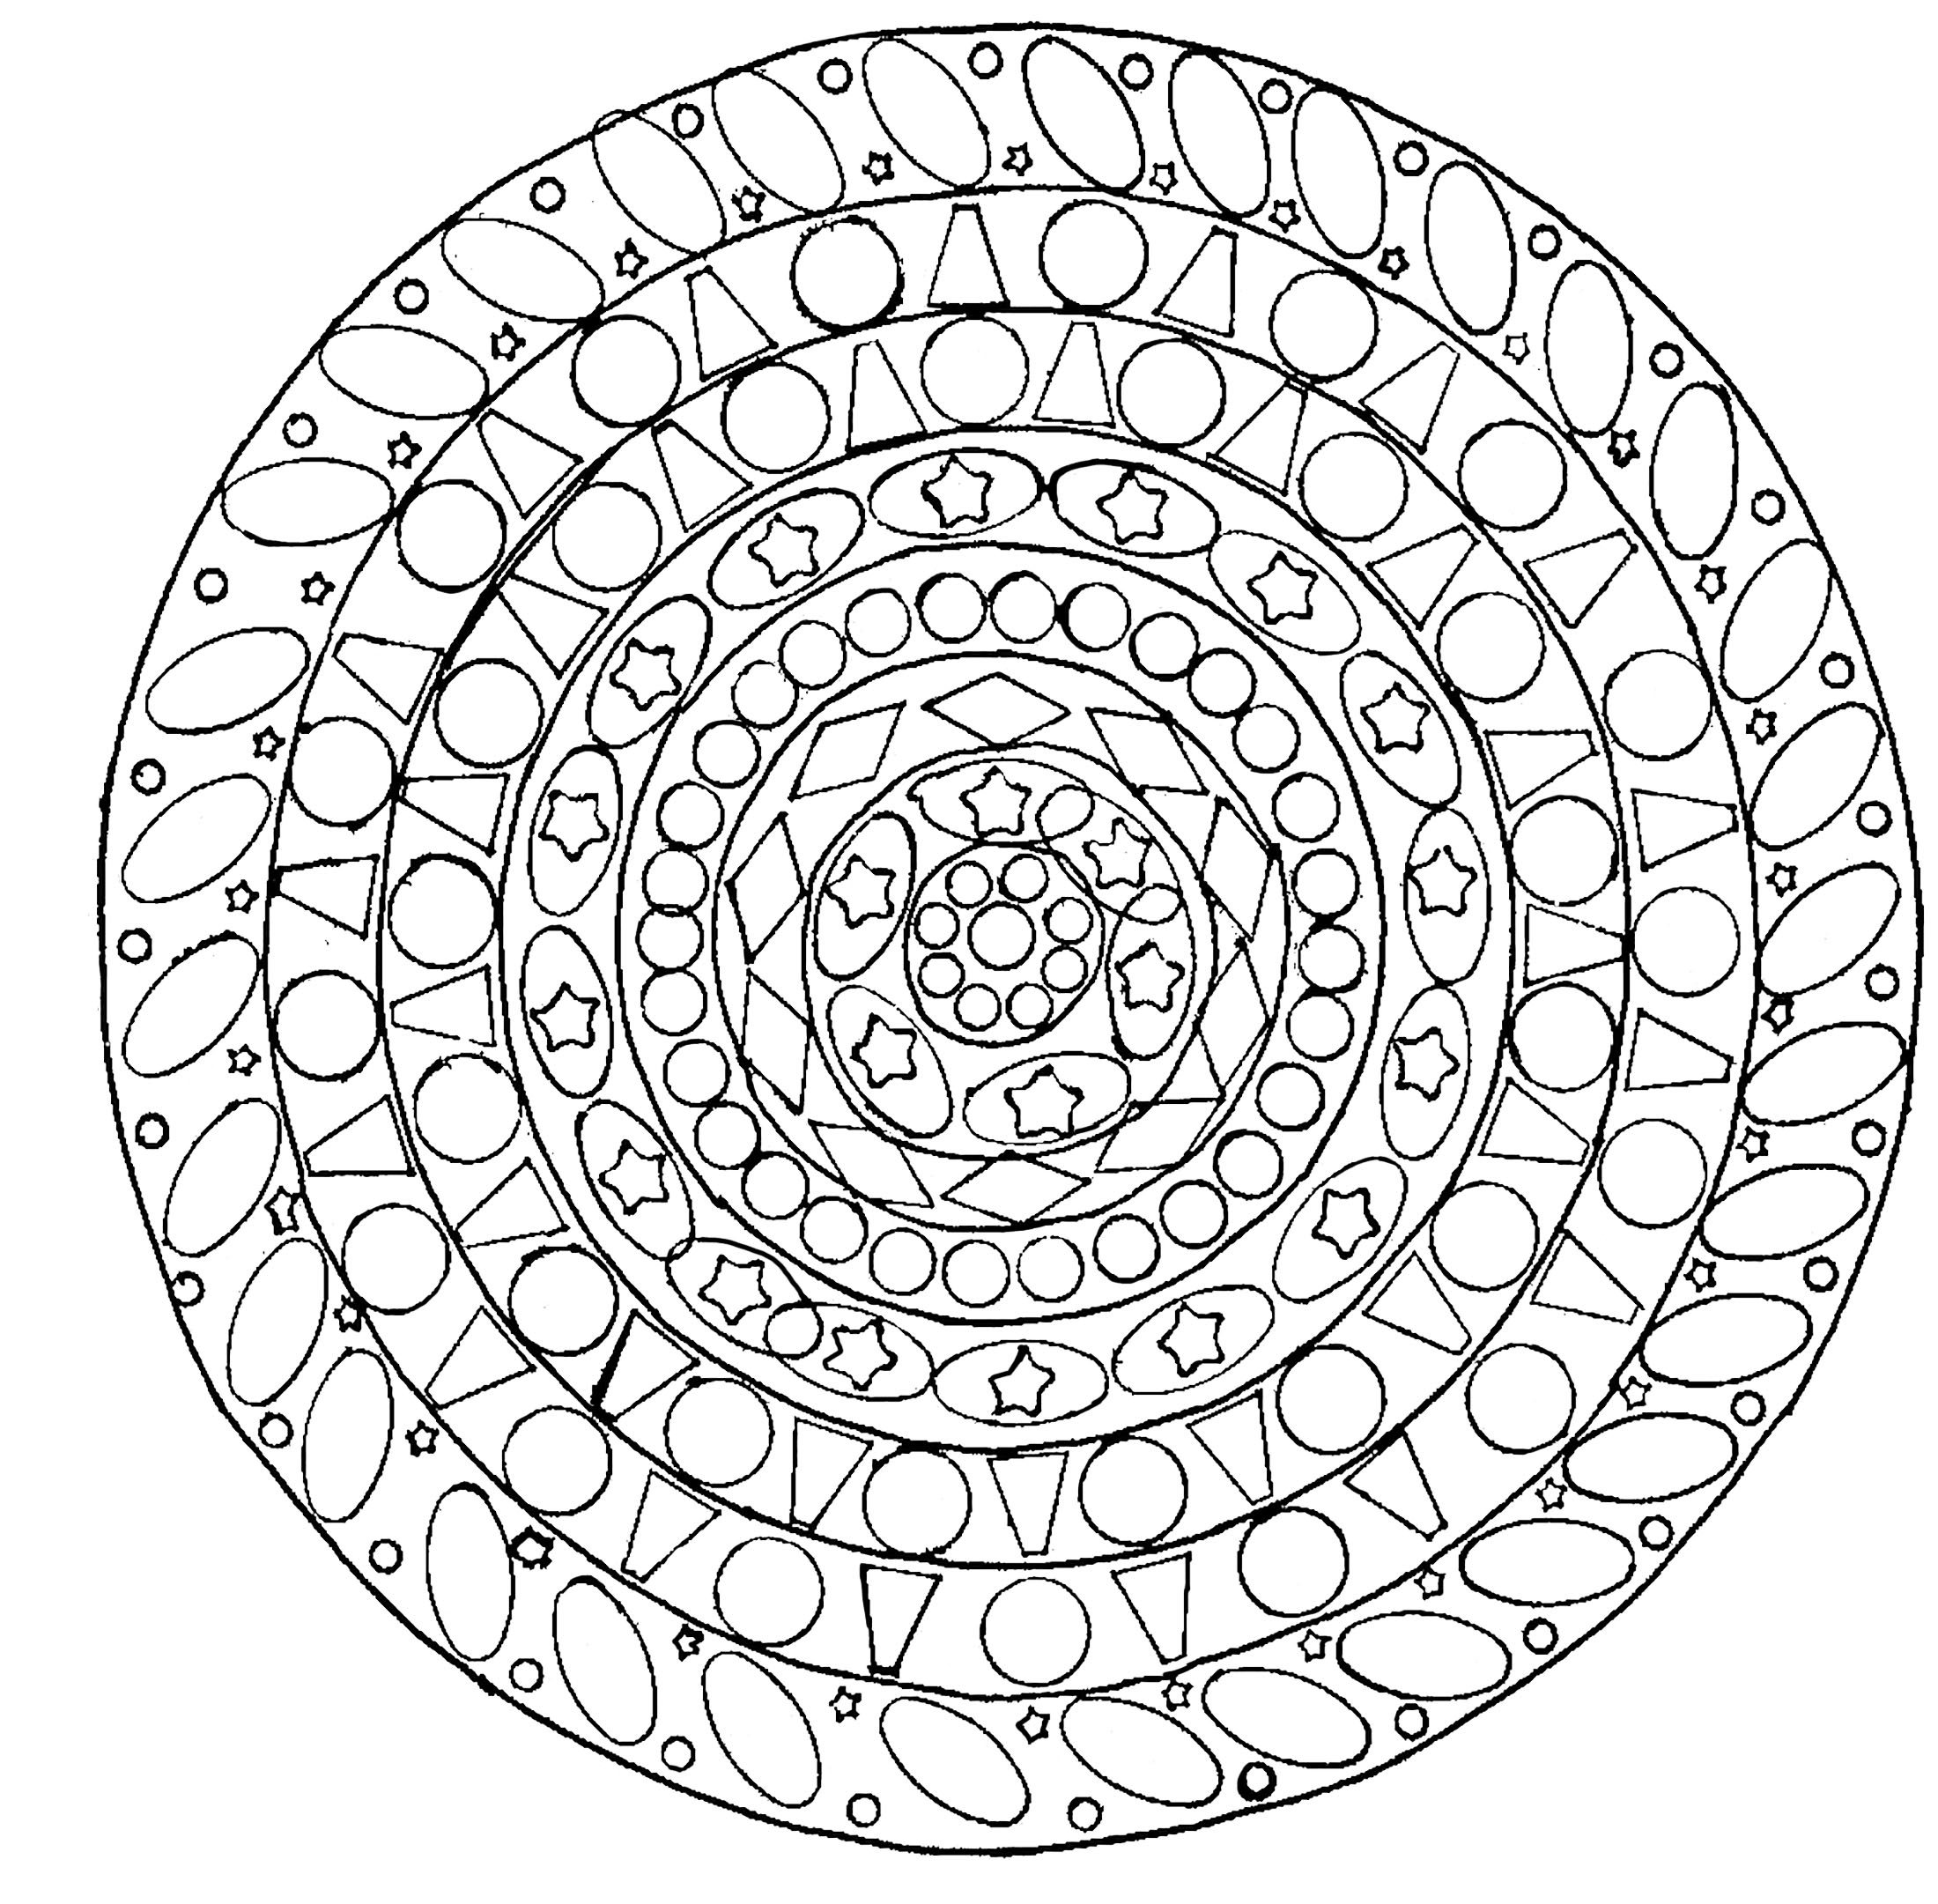 Si vous cherchez un Mandala avec petits éléments pas trop compliqué à colorier, mais avec quand même un niveau de difficulté relatif, celui-ci est parfait pour vous.